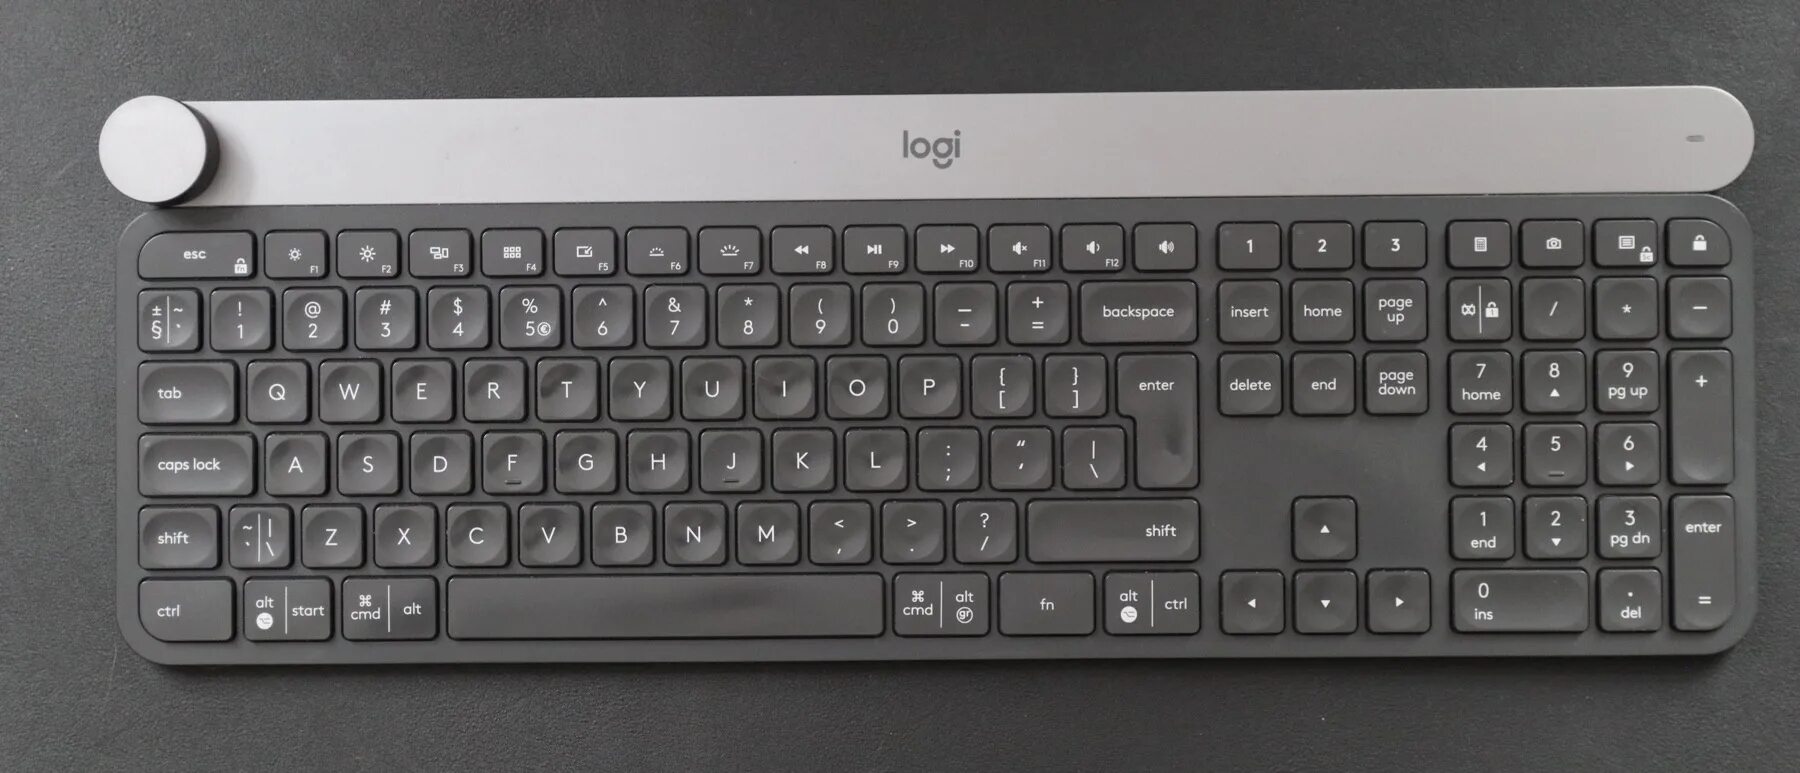 Клавиатура Logitech для Mac. Раскладка клавиатуры с нумпадом. Раскладка клавиатуры Лоджитек. Клавиатура компьютера с нумпадом. Раскладка клавиатуры фото крупным планом